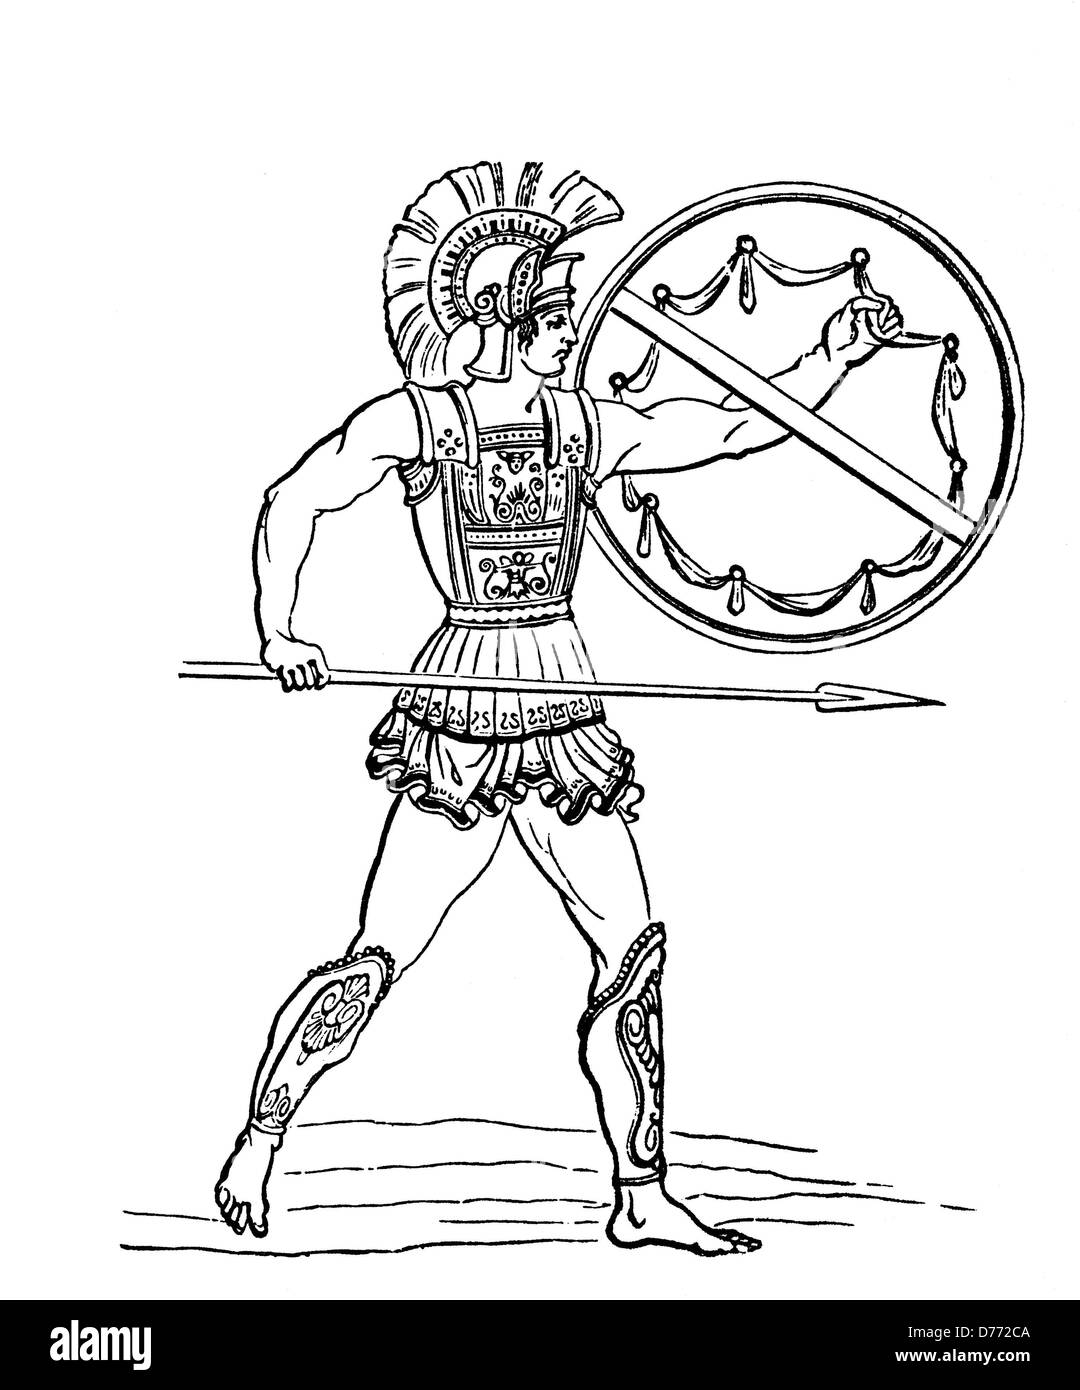 Un Oplita, un cittadino-soldato di una delle antiche città greco-membri del periodo arcaico e classico, xilografia dal 1880 Foto Stock